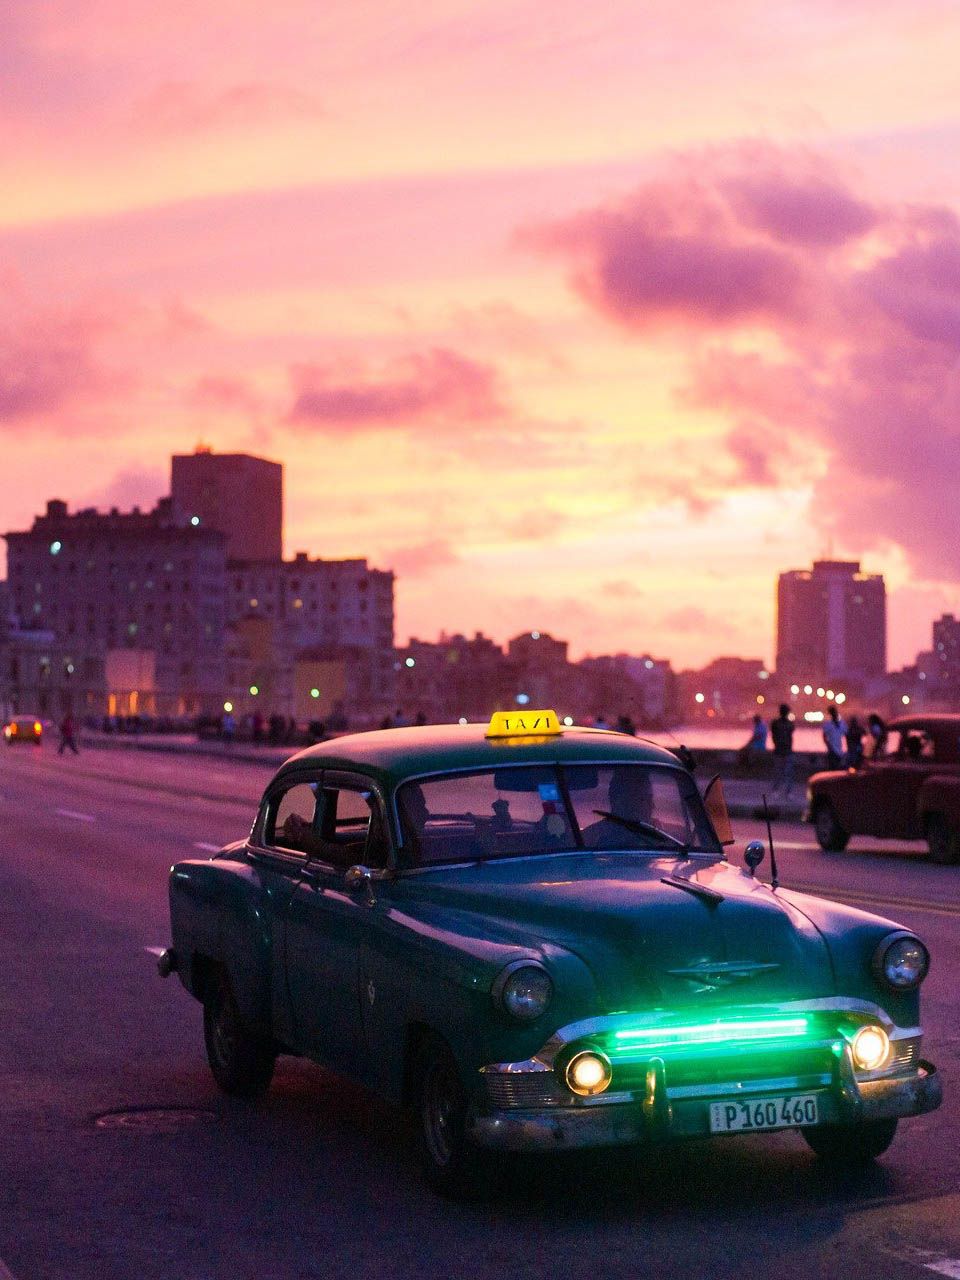 La Habana-malecon